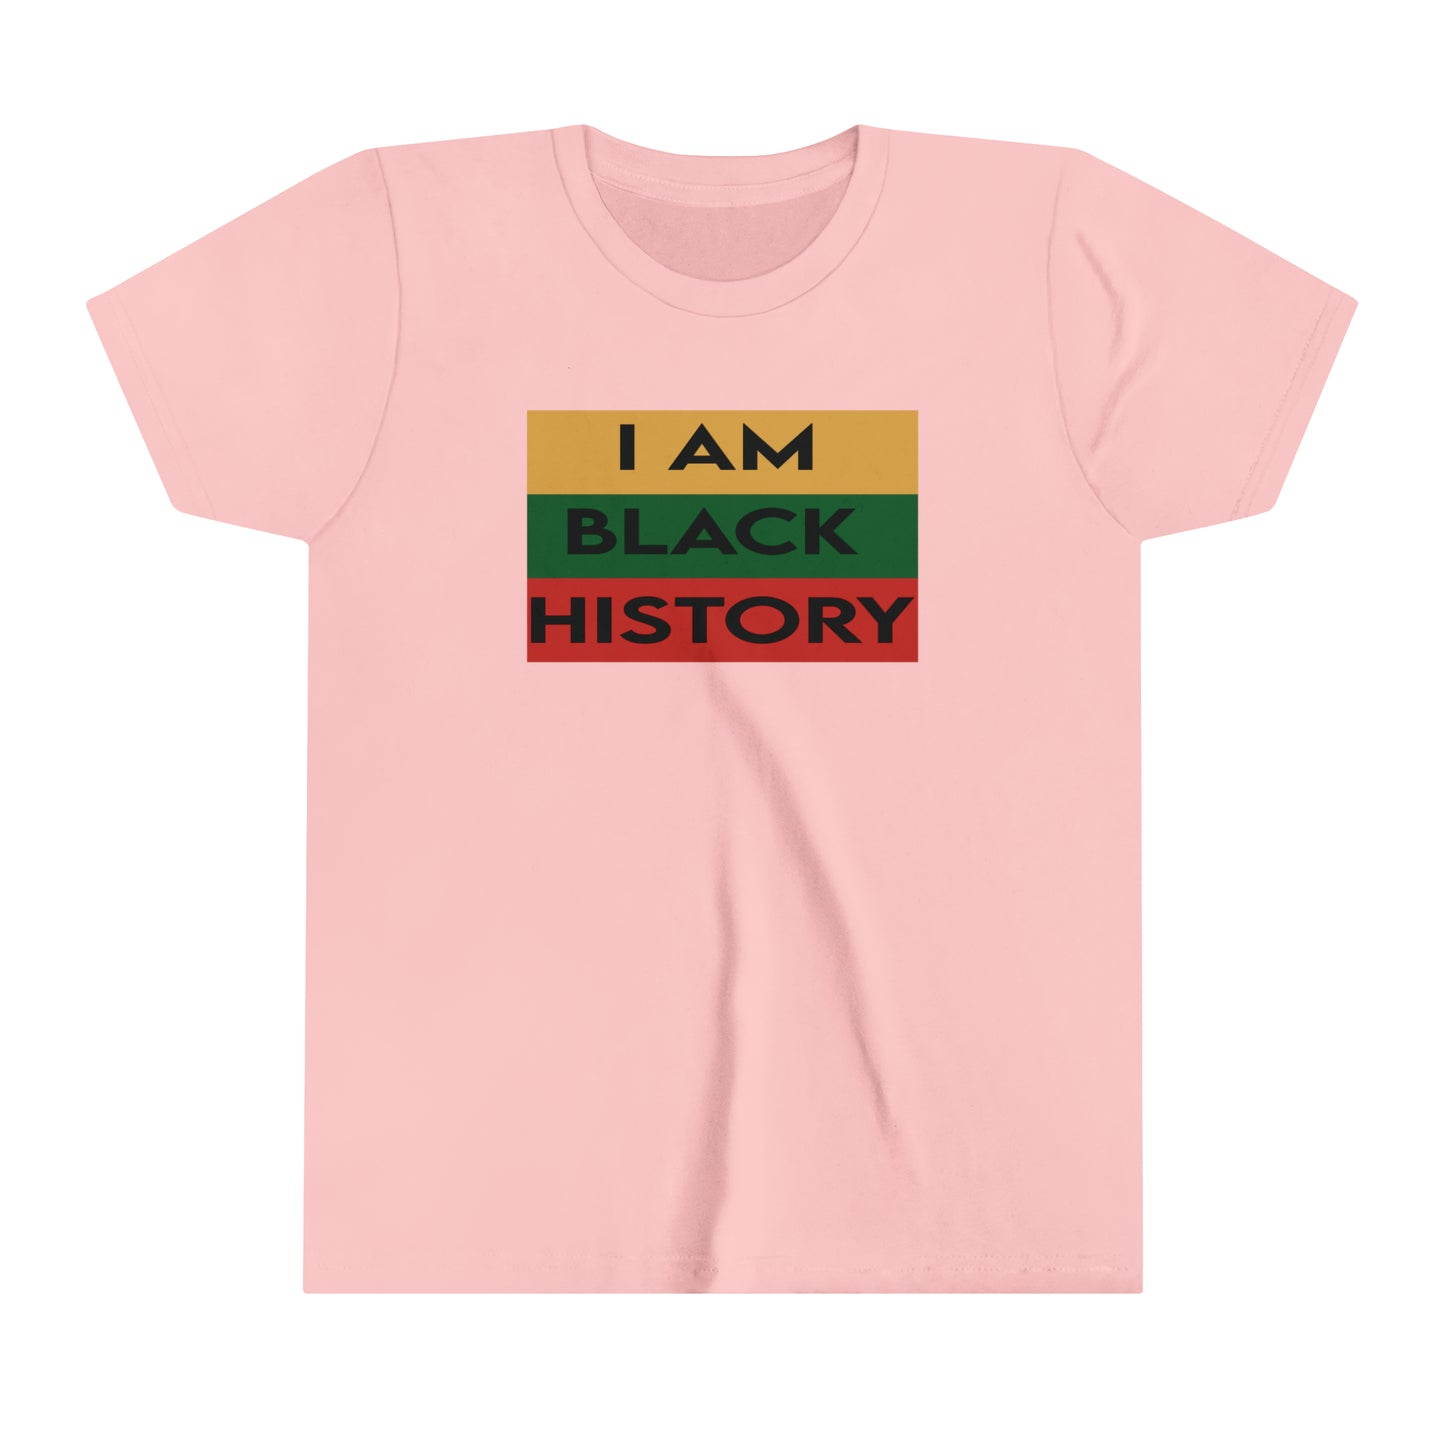 I AM BLACK HISTORY Youth Short Sleeve Tee